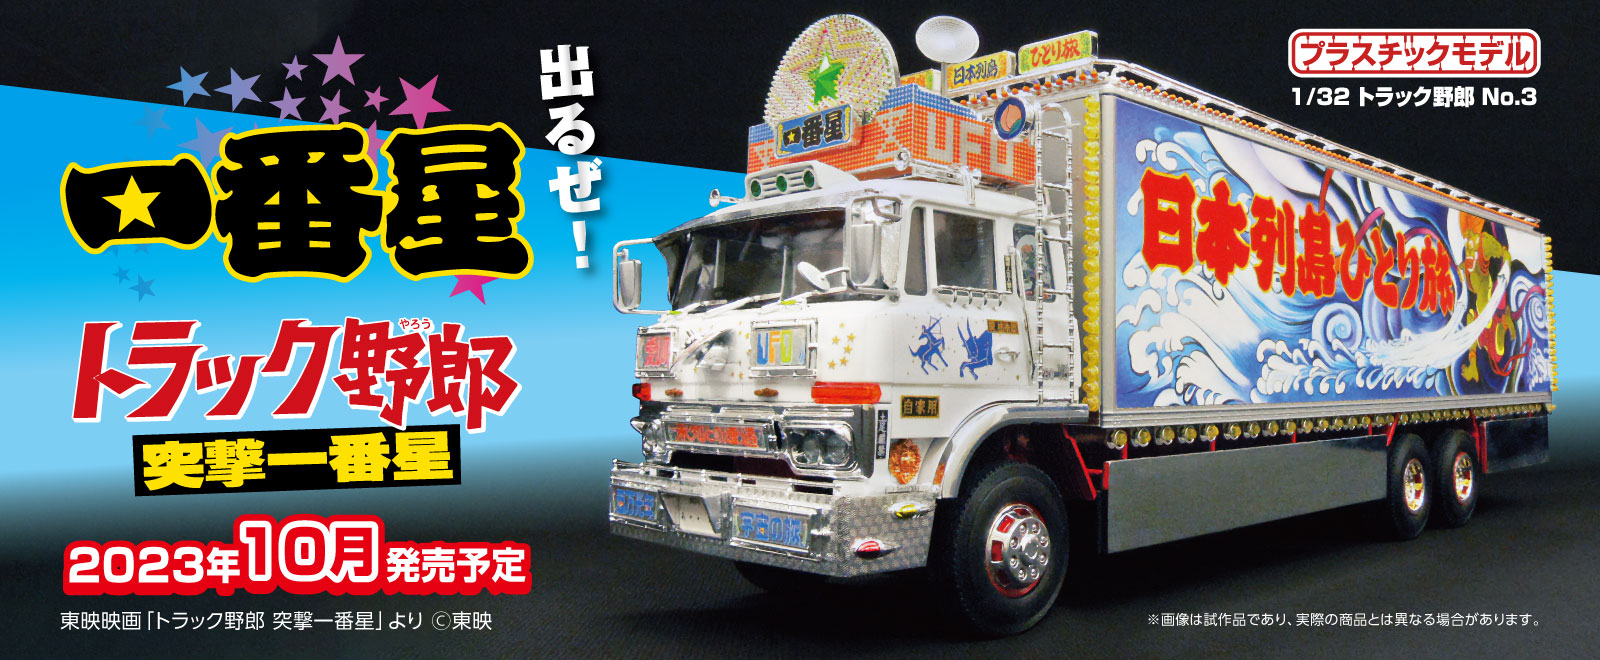 バンダイ トラック野郎 熱風5000キロ 1/20ディスプレイモデル - 模型